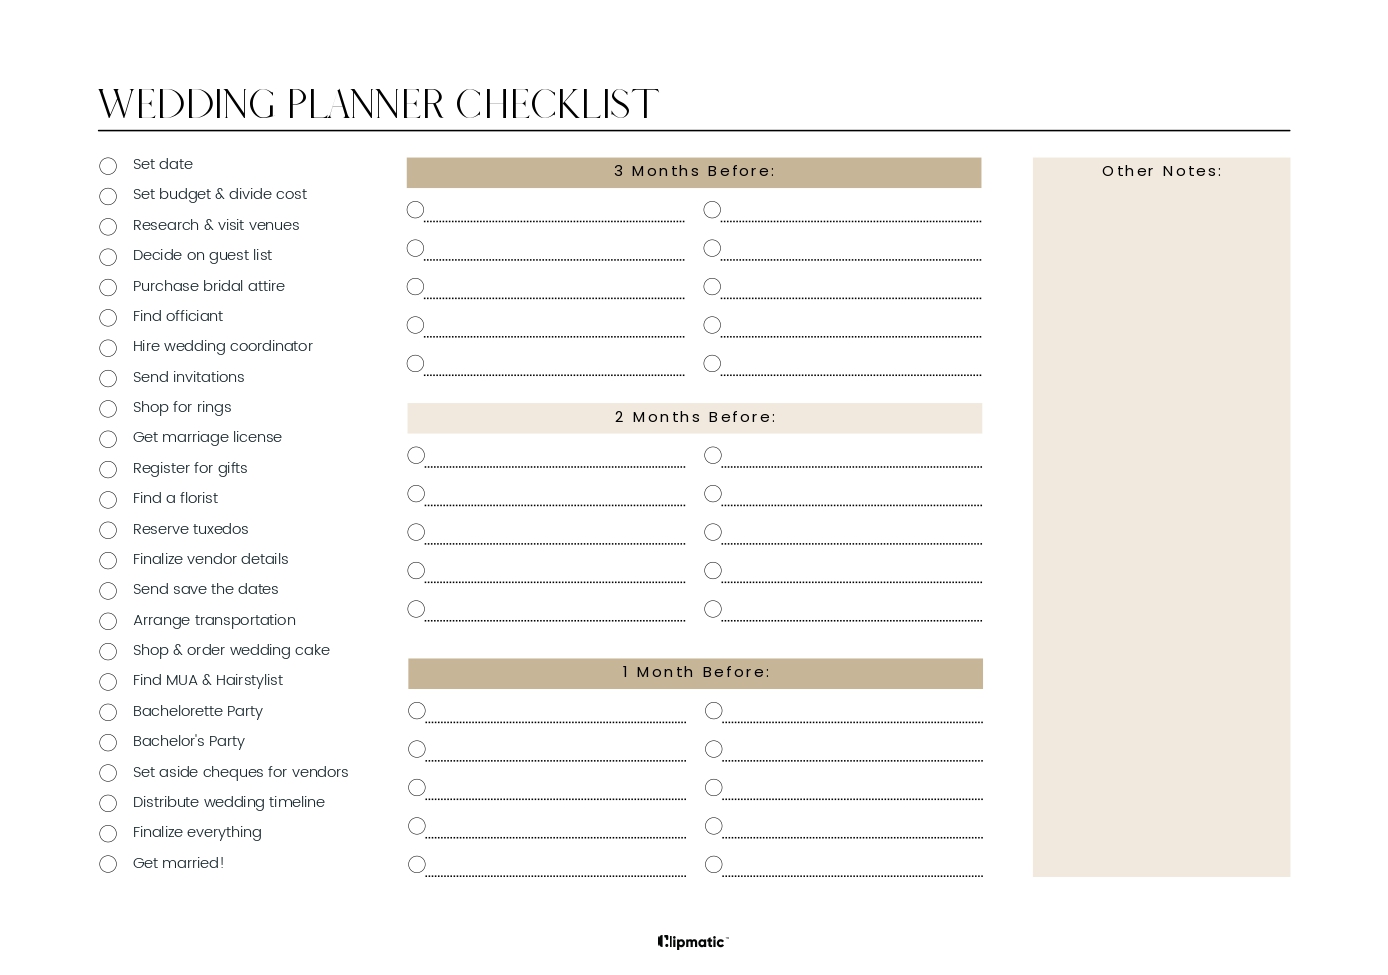 Wedding Planner Printable BUNDLE  Wedding Checklist, Budget, Planner